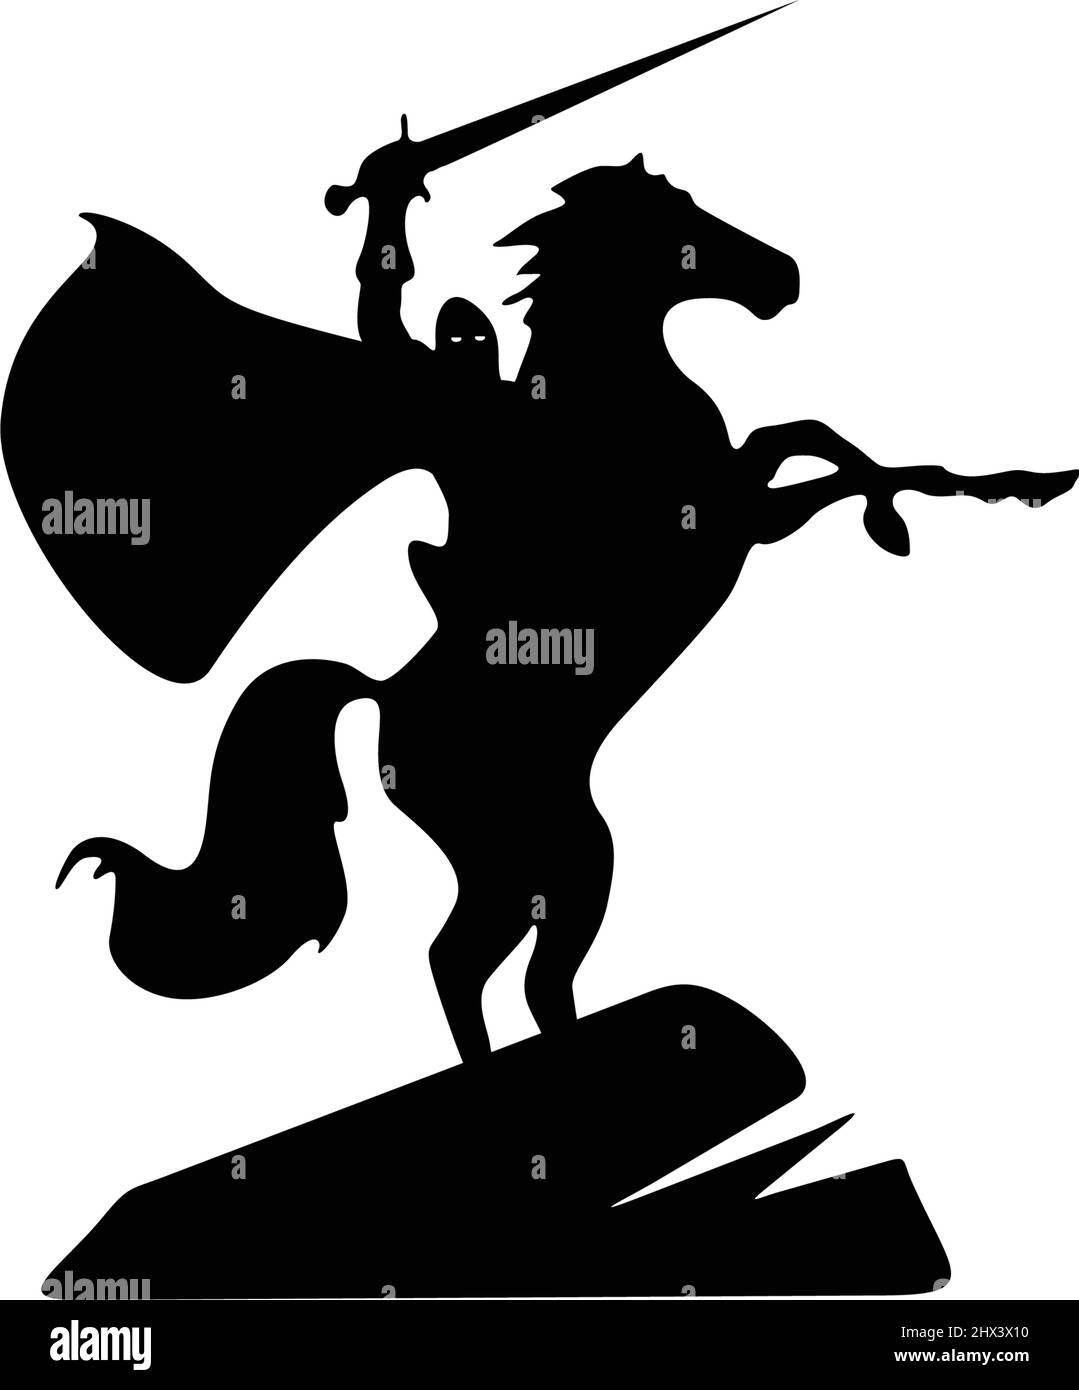 Semplice e classico guerriero equestre simbolo Illustrazione Vettoriale